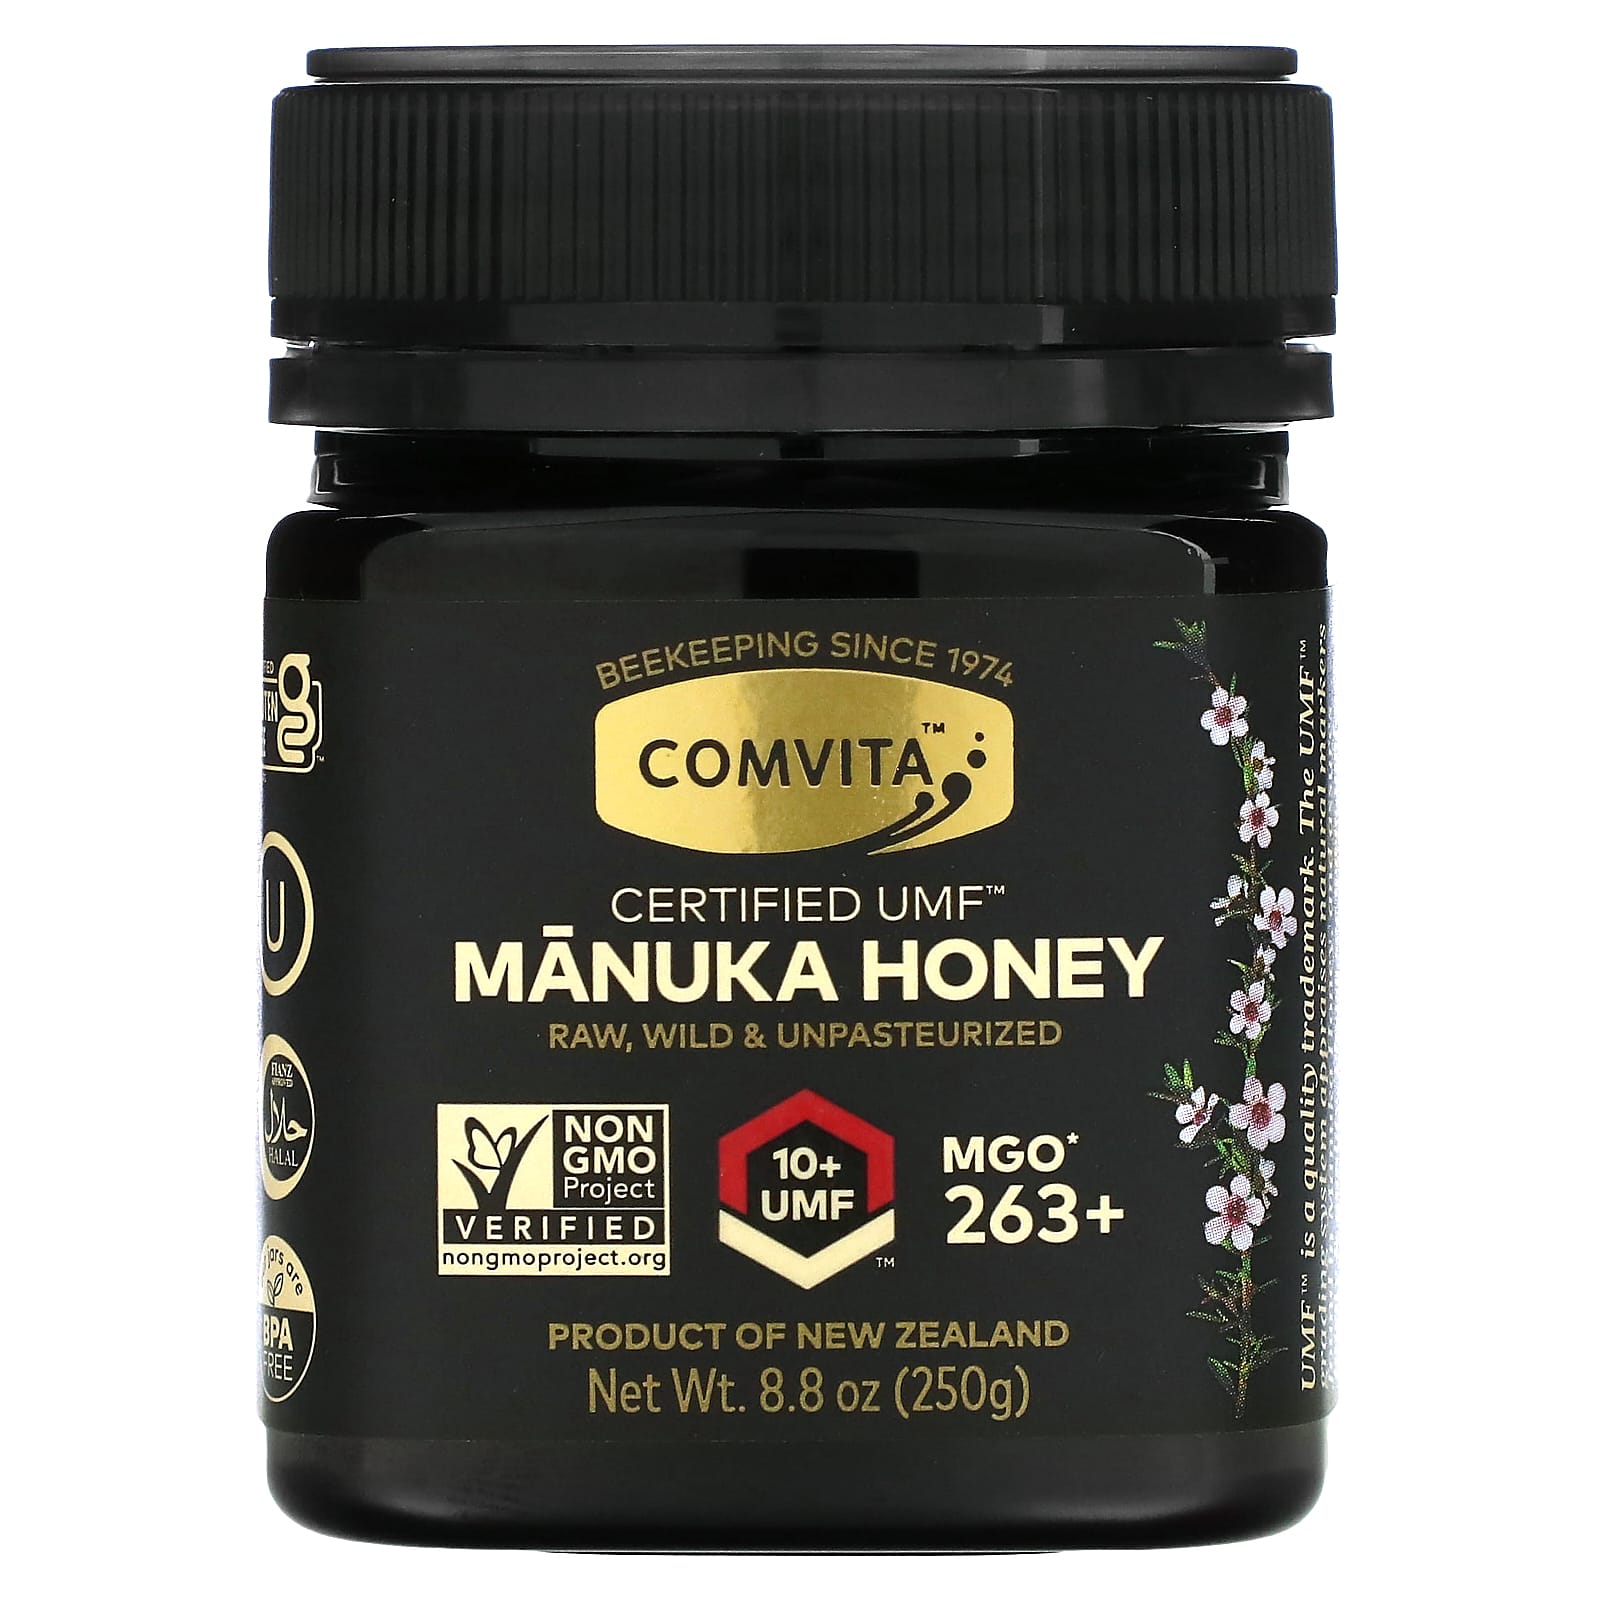 Miel de Manuka de Nueva Zelanda certificada UMF 10+, 8.8oz (250g)